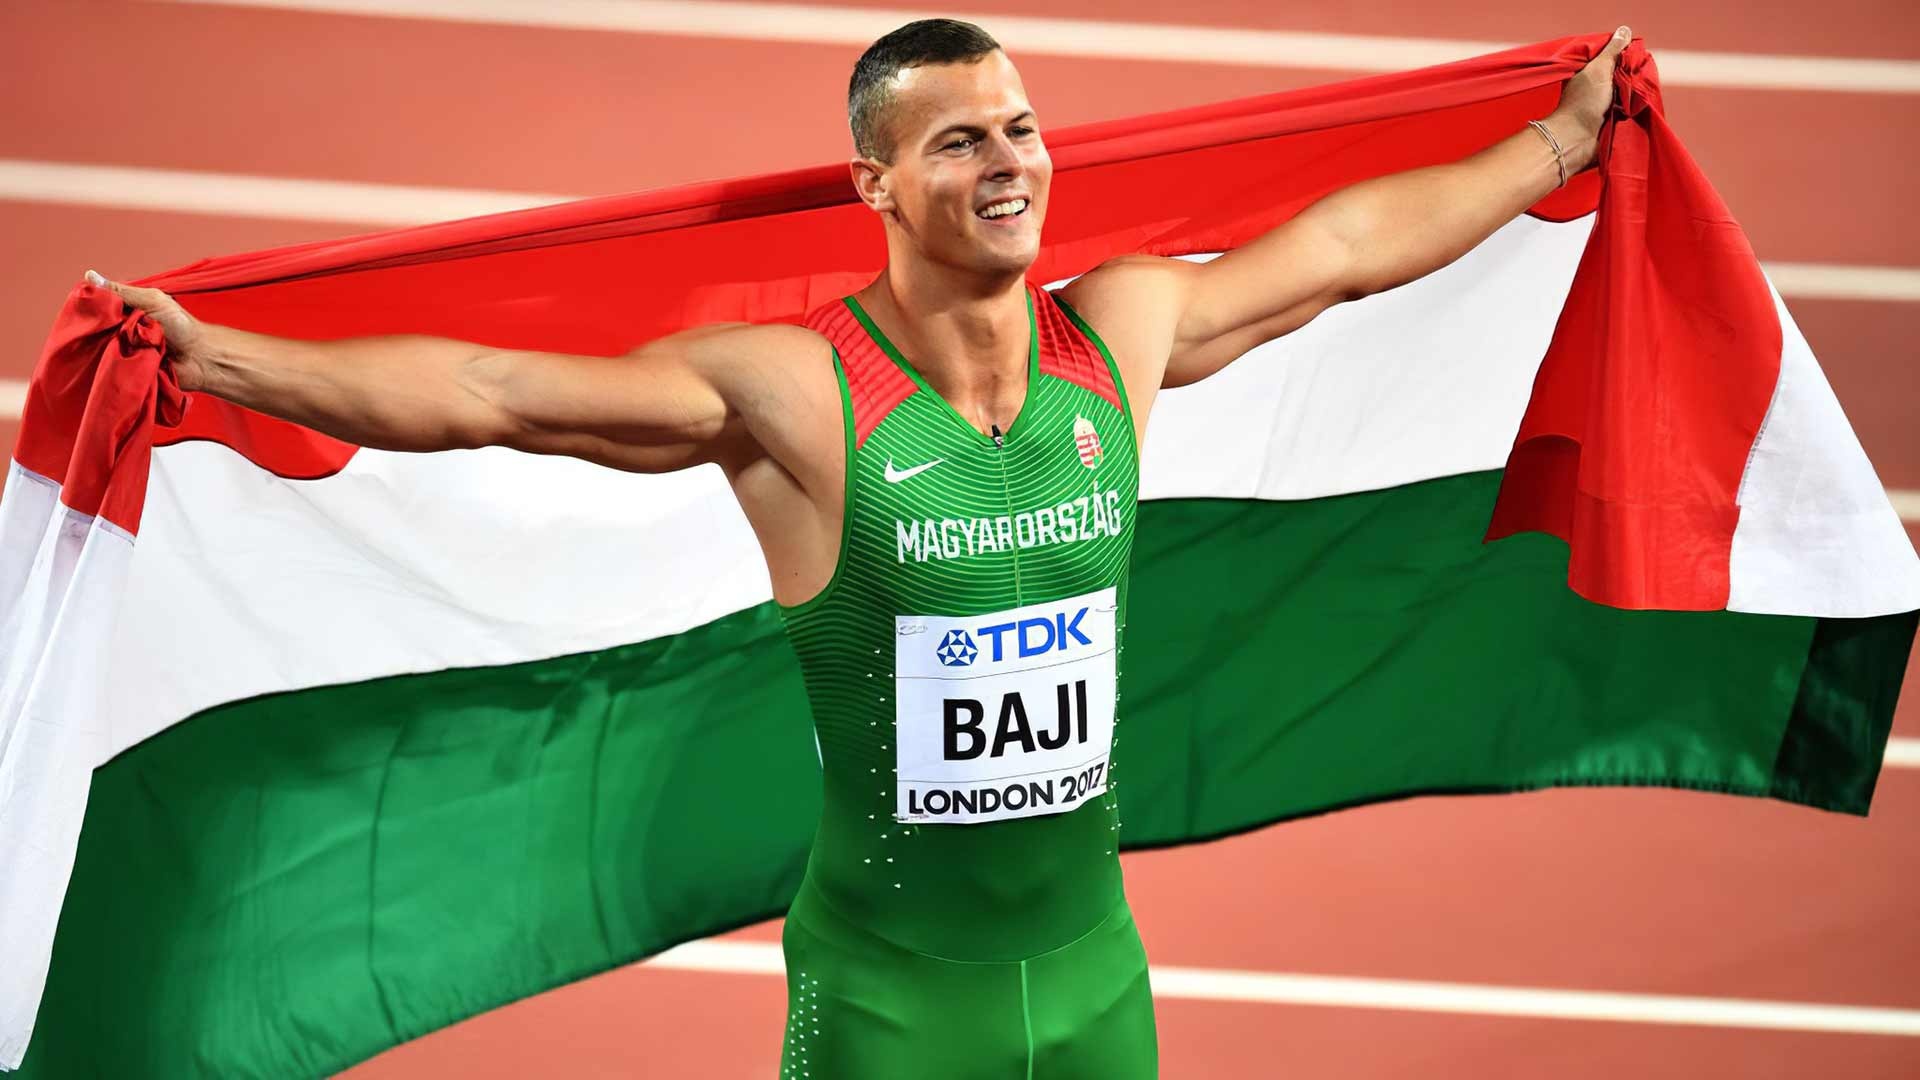 Balazs Baji, Hungarian para athlete, Magyar Parasport, National awareness, 1920x1080 Full HD Desktop